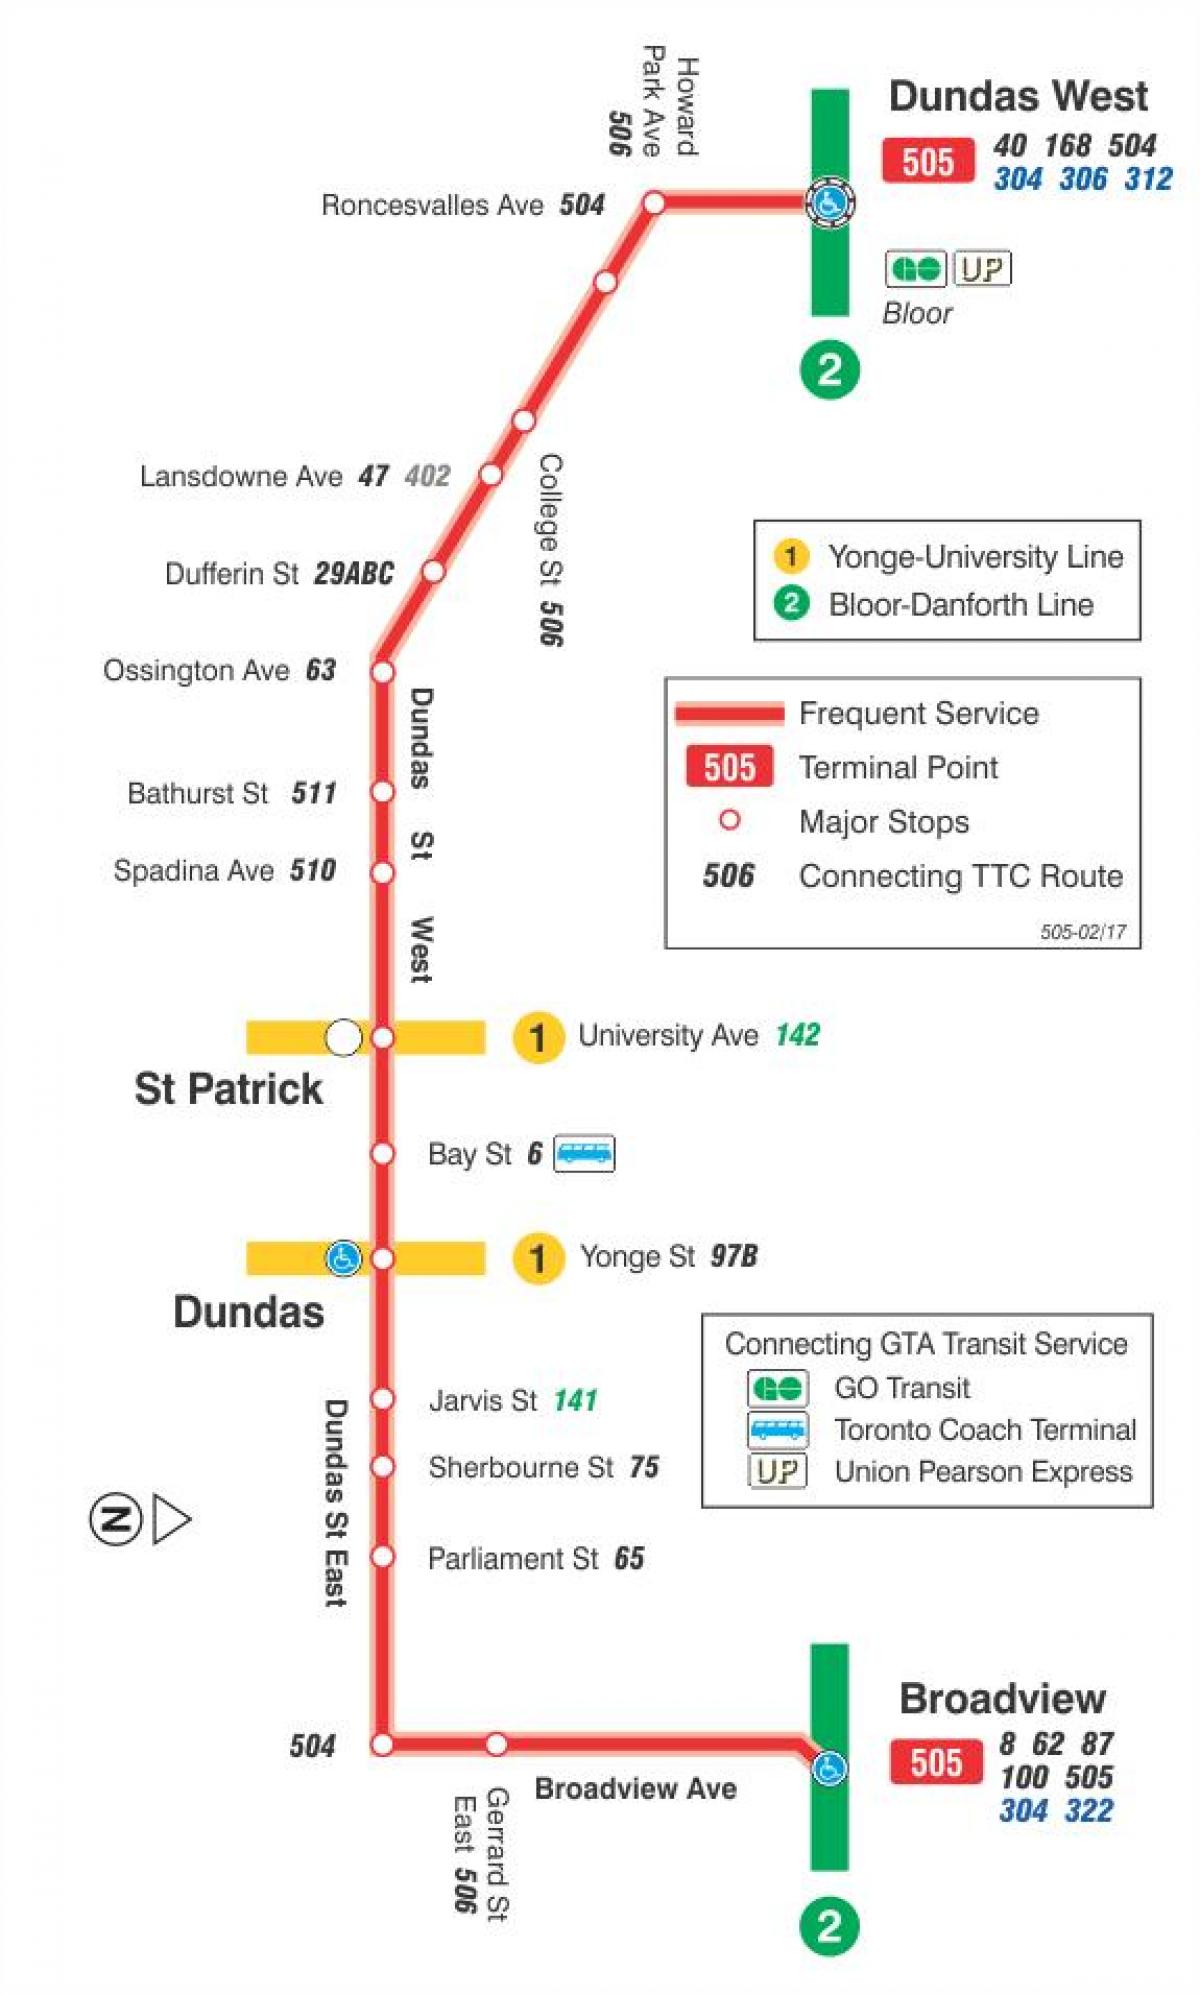 Ramani ya streetcar line 505 Dundas